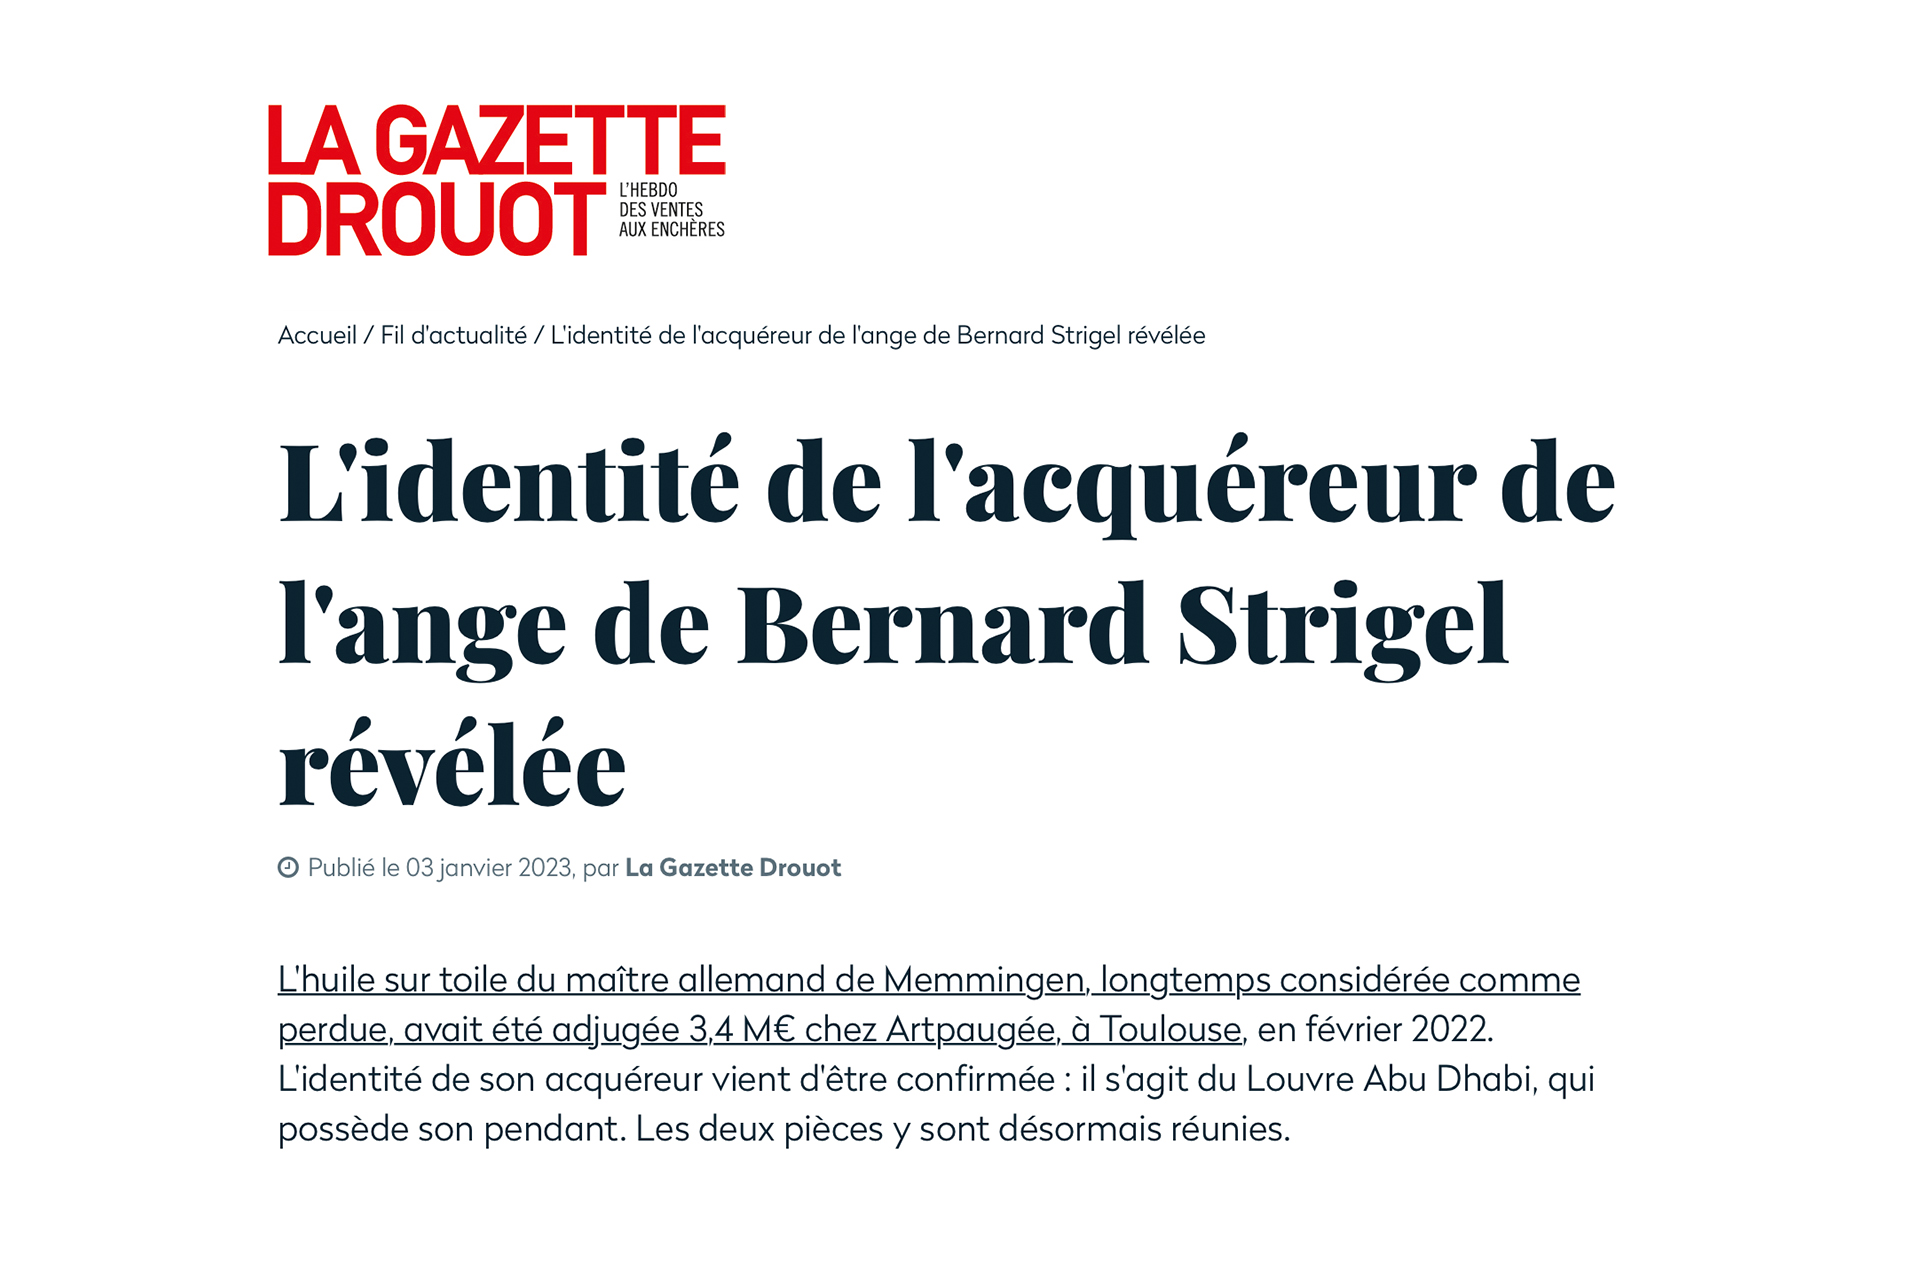 « L’identité de l’acquéreur de l’ange de Bernard Strigel révélée », 3 janvier 2023